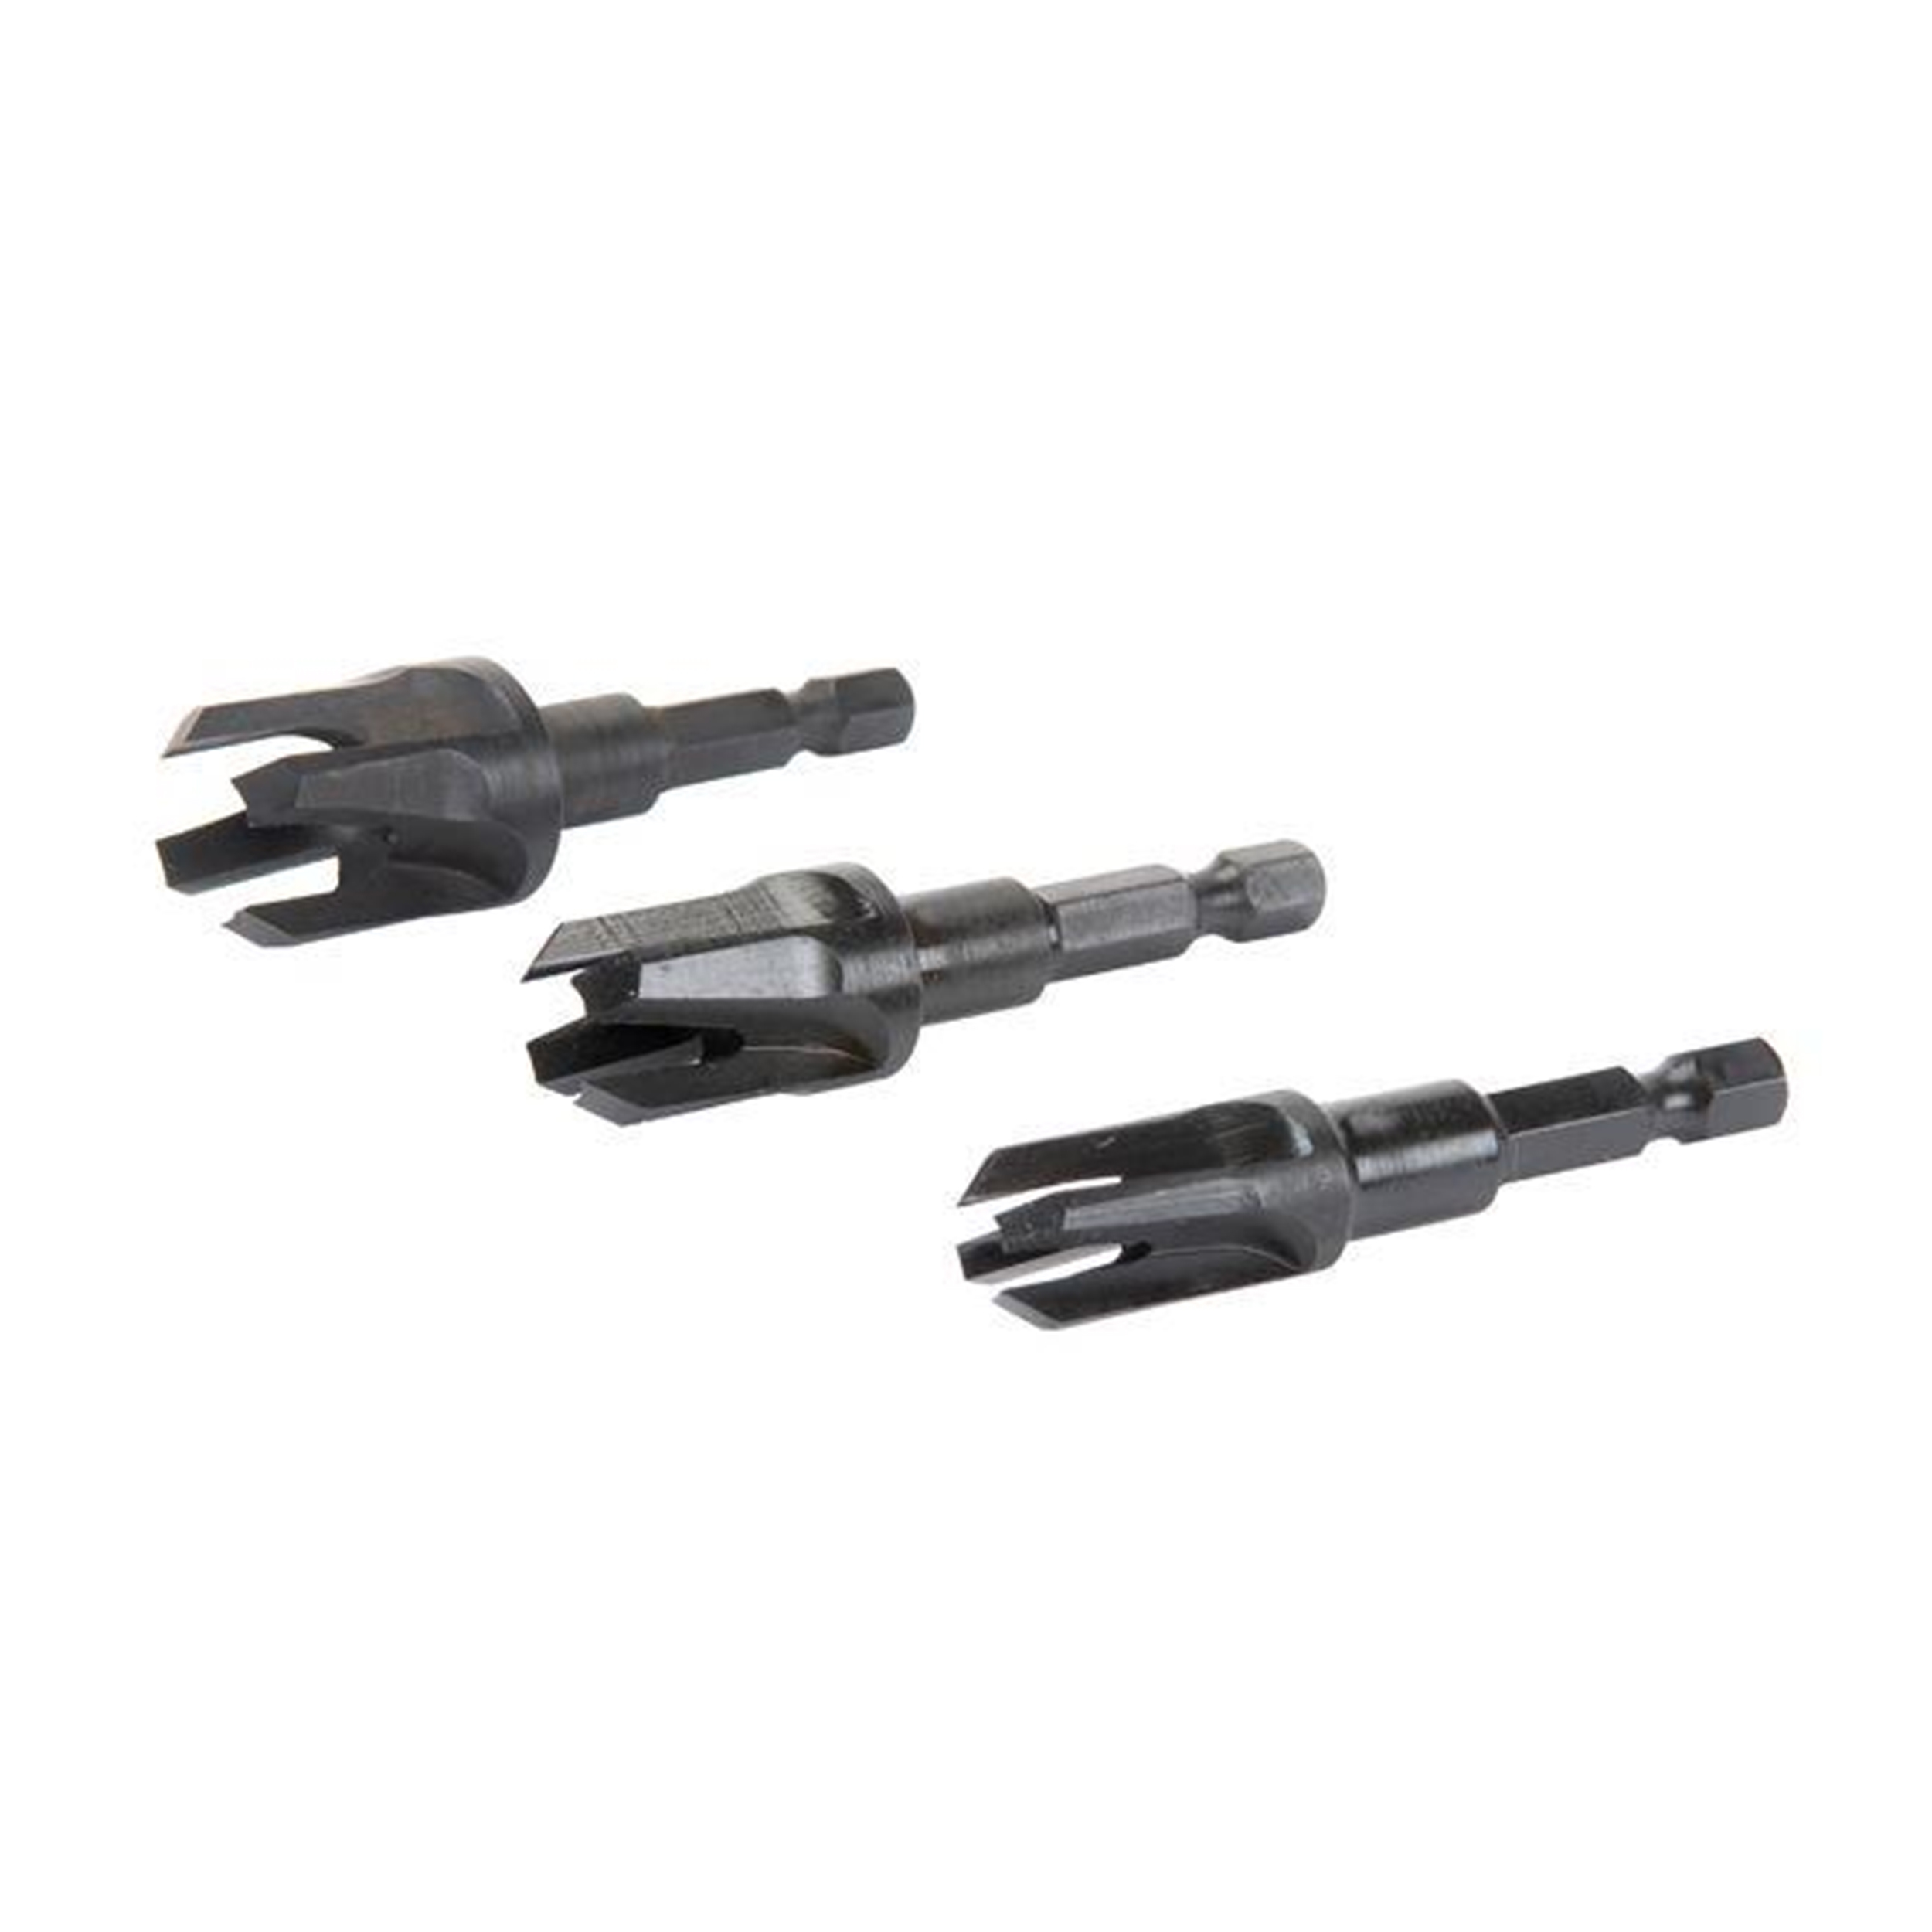 Set Of 3 Plug Cutters - 1/4", 3/8", 1/2"